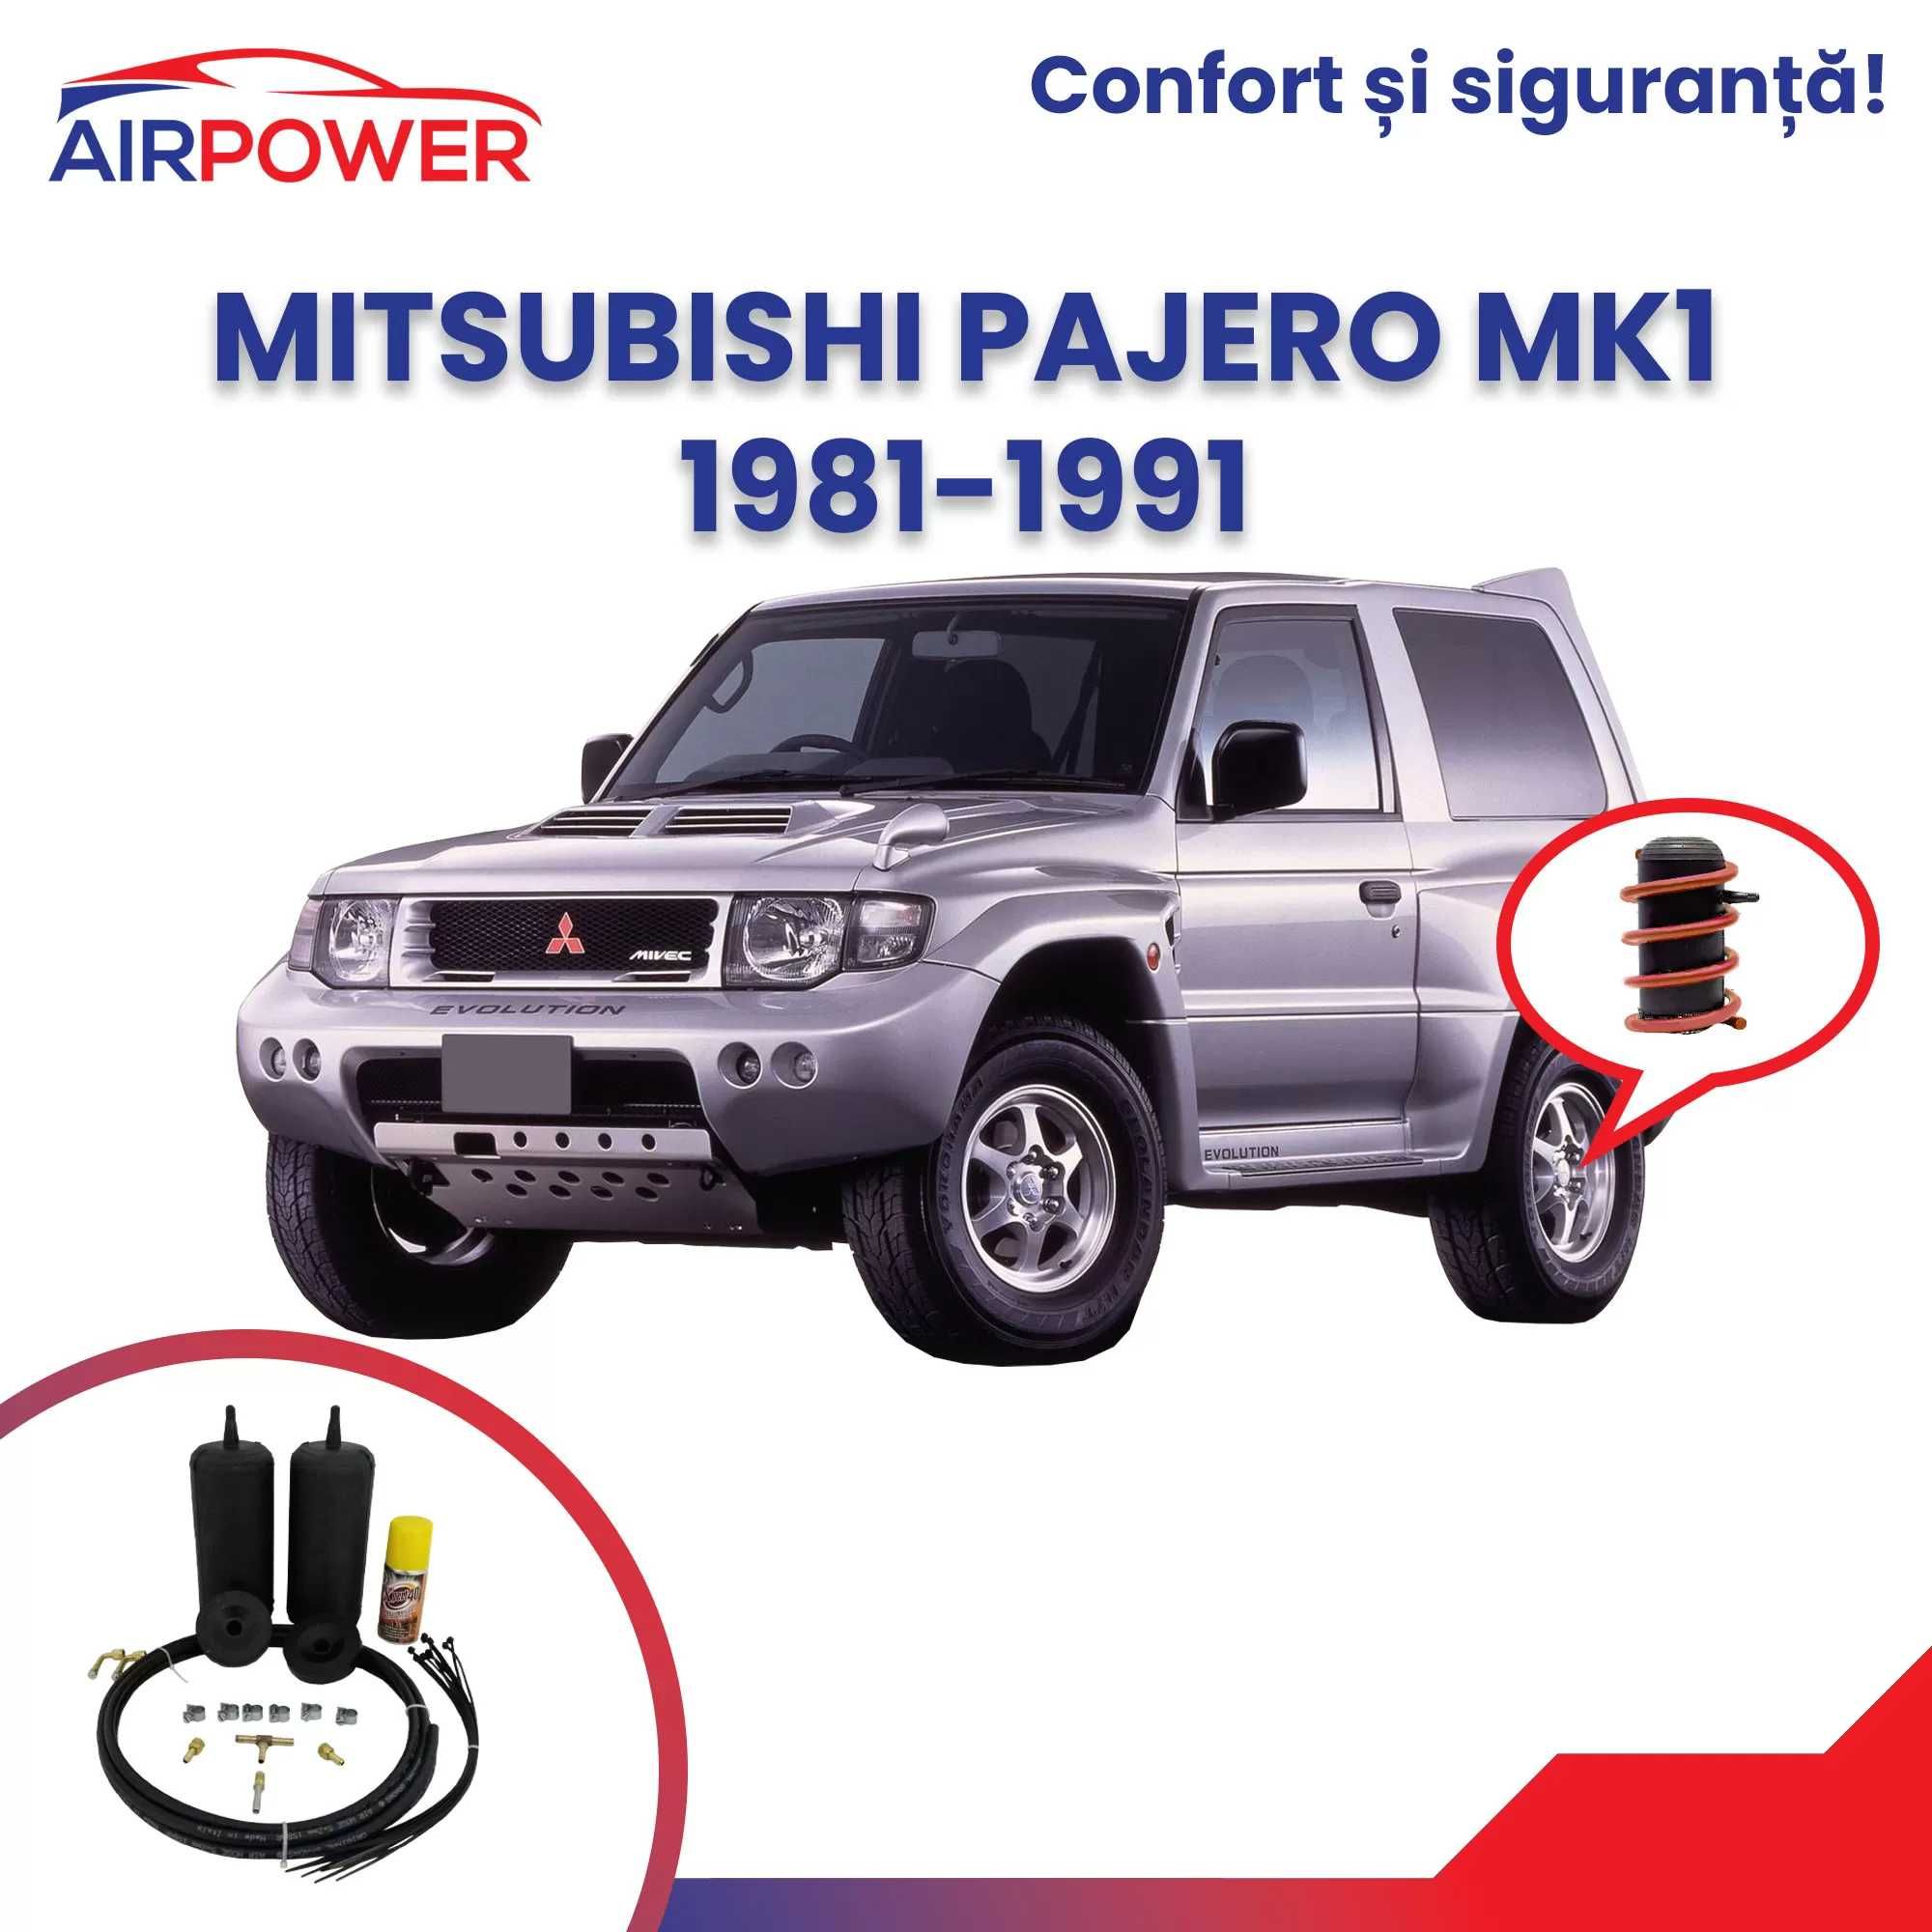 Perne auxiliare, perne auto pneumatice, Mitsubishi Pajero.